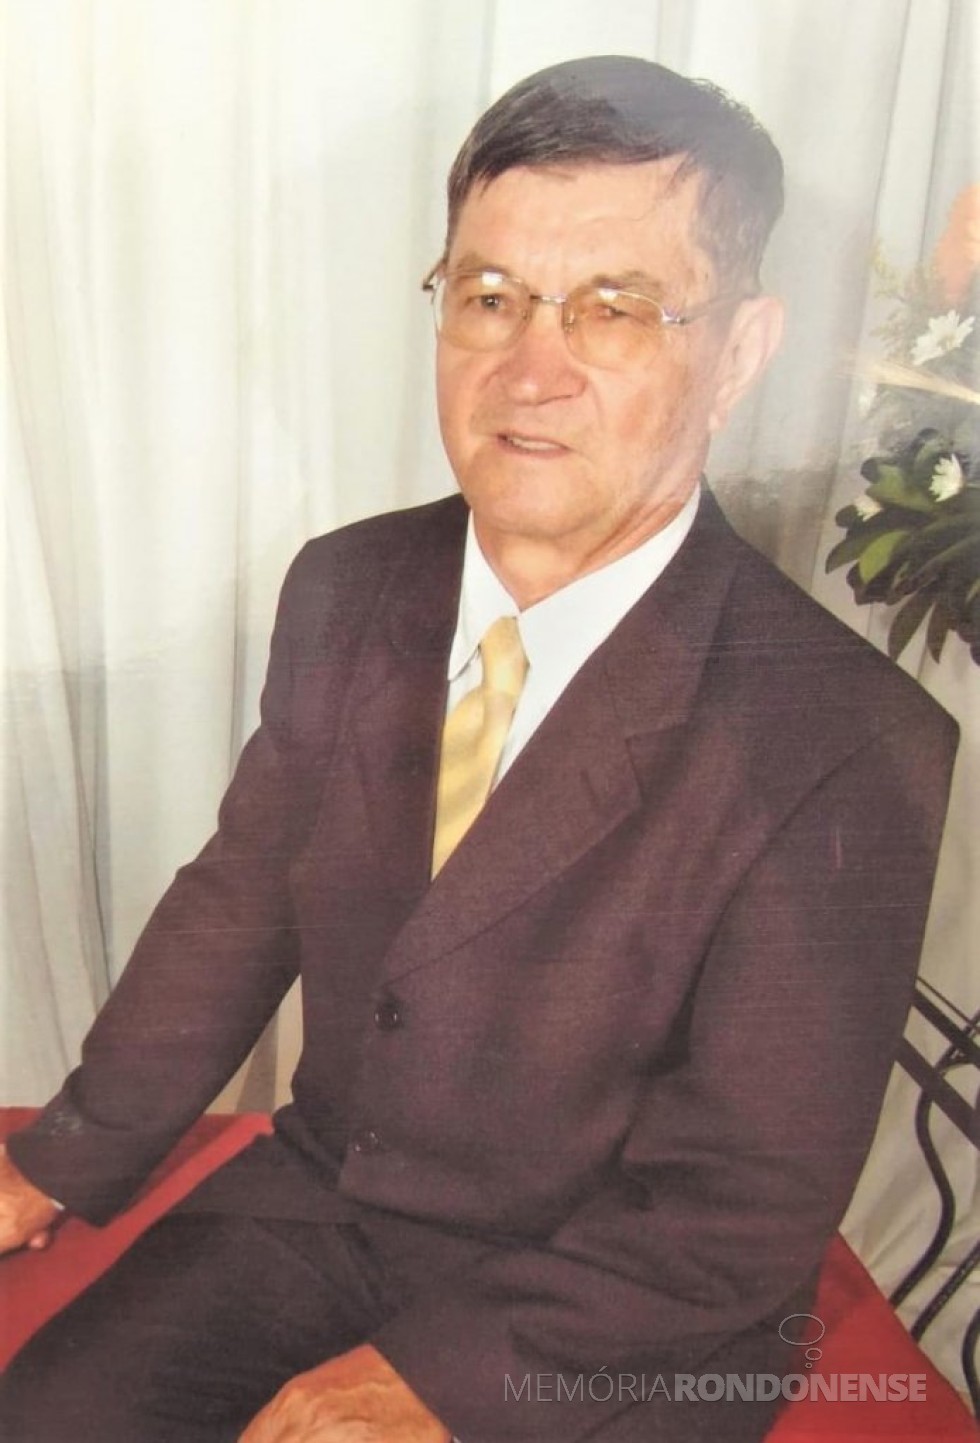 Pioneir rondonense Gentil Fávero Forlin falecido em julho de 2015.
Imagem: Acervo Projeto Memória Rondonense - FOTO 5 -